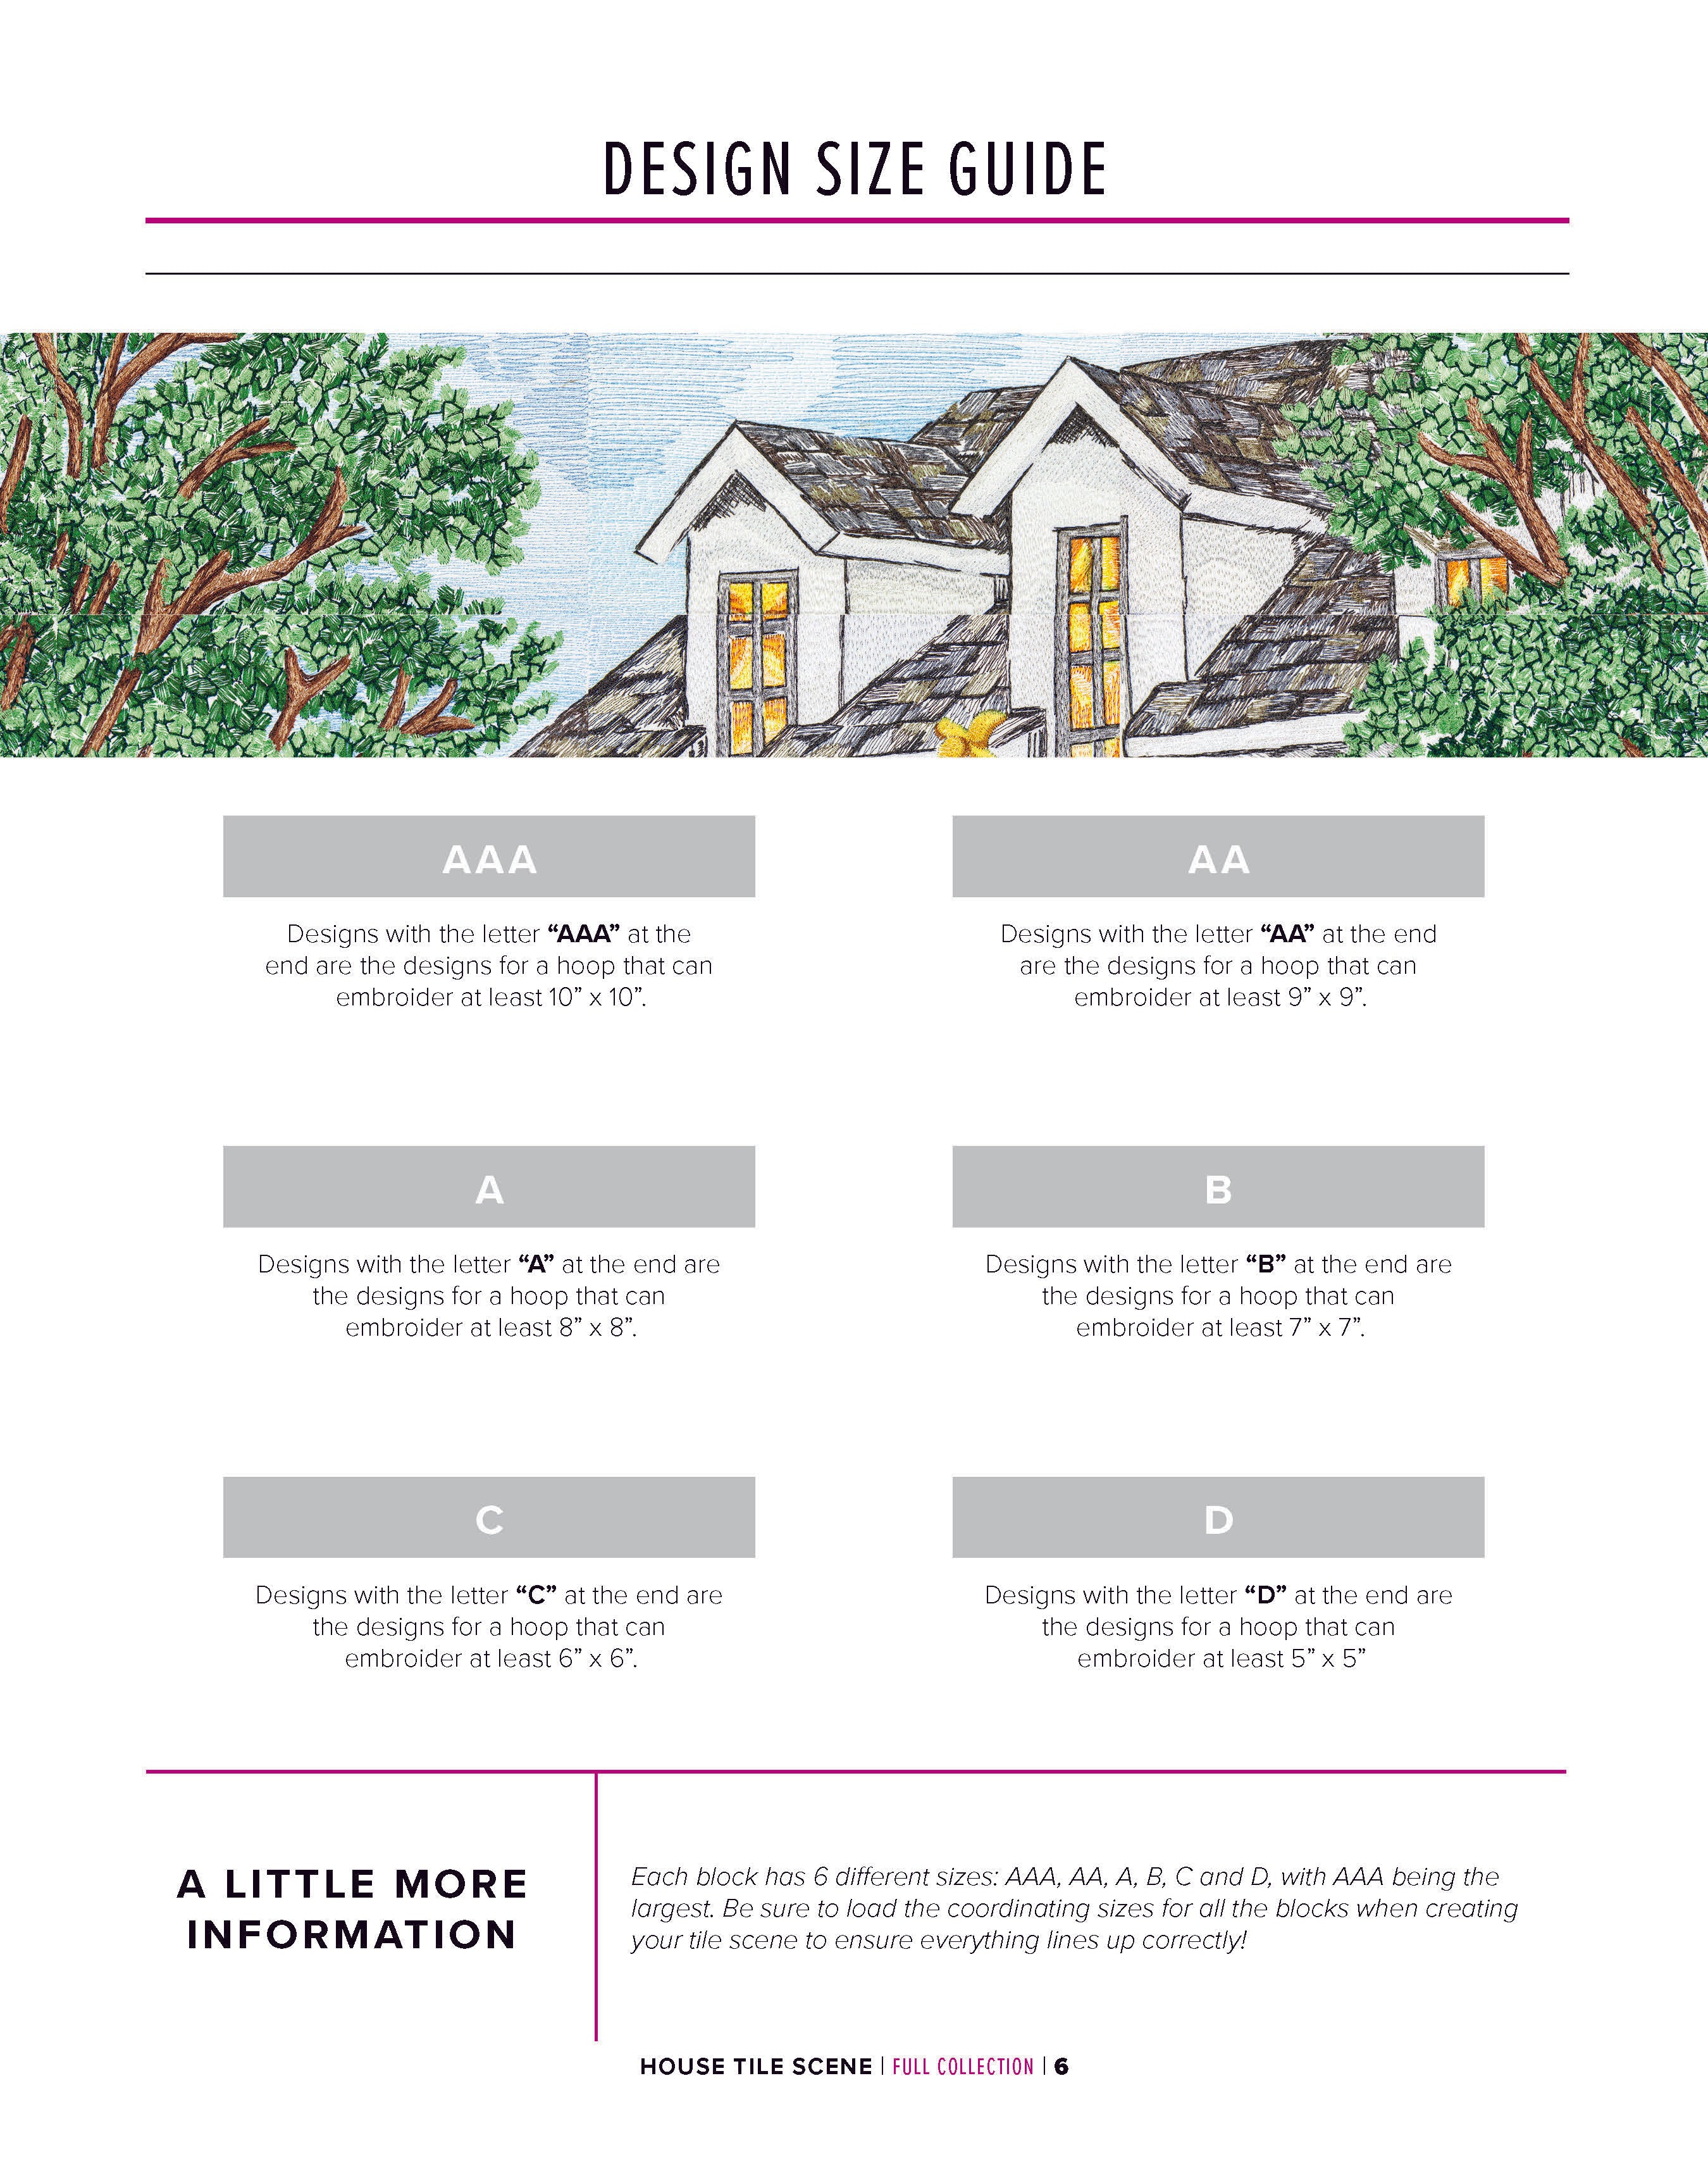 House Tile Scene — Anita Goodesign